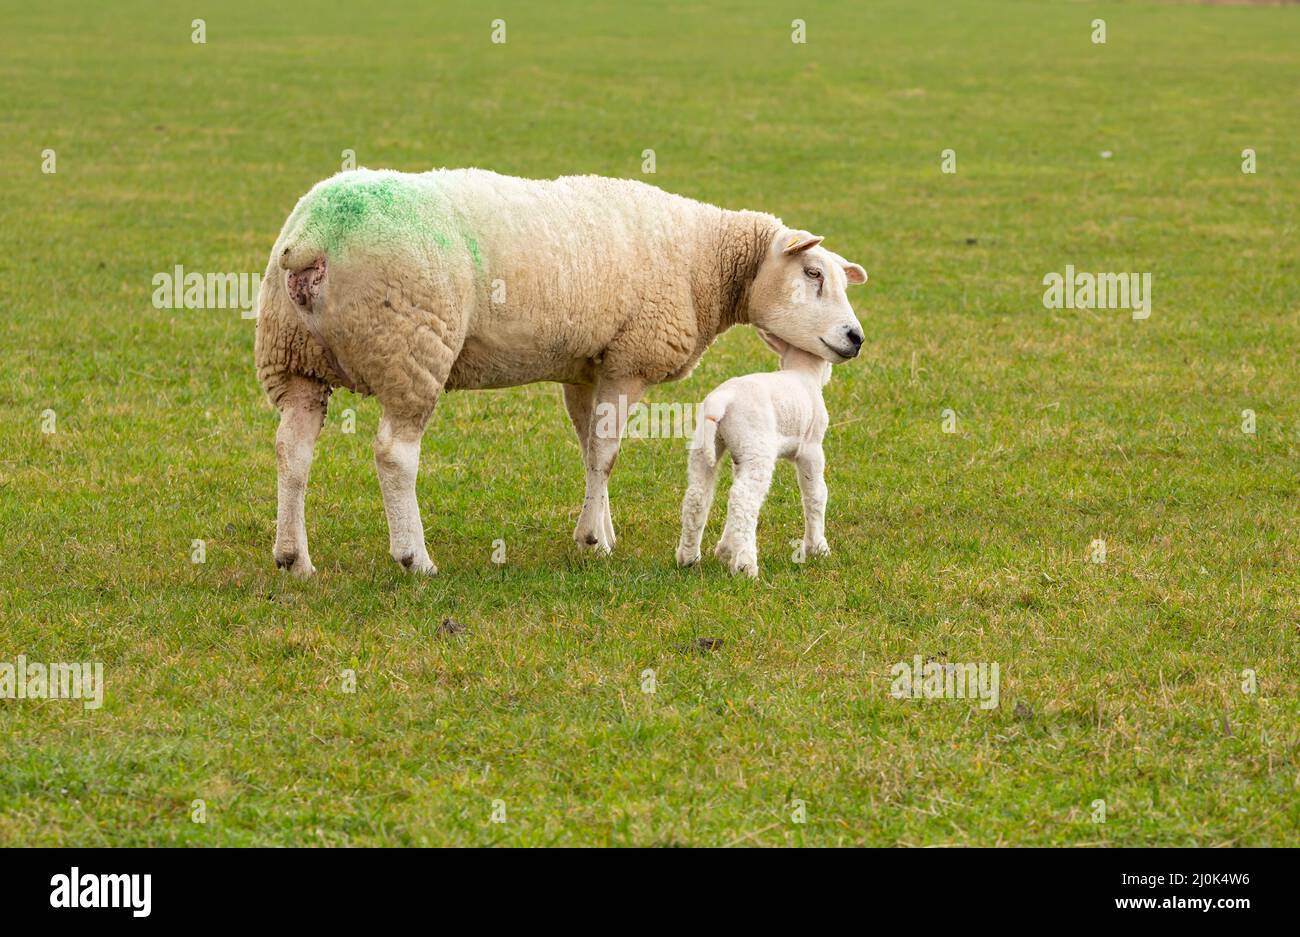 Texel Ewe, una oveja femenina, con su cordero recién nacido. Un momento tierno entre la madre y el cordero del bebé en prado verde. Concepto: El amor de una madre. Horizontal, Foto de stock